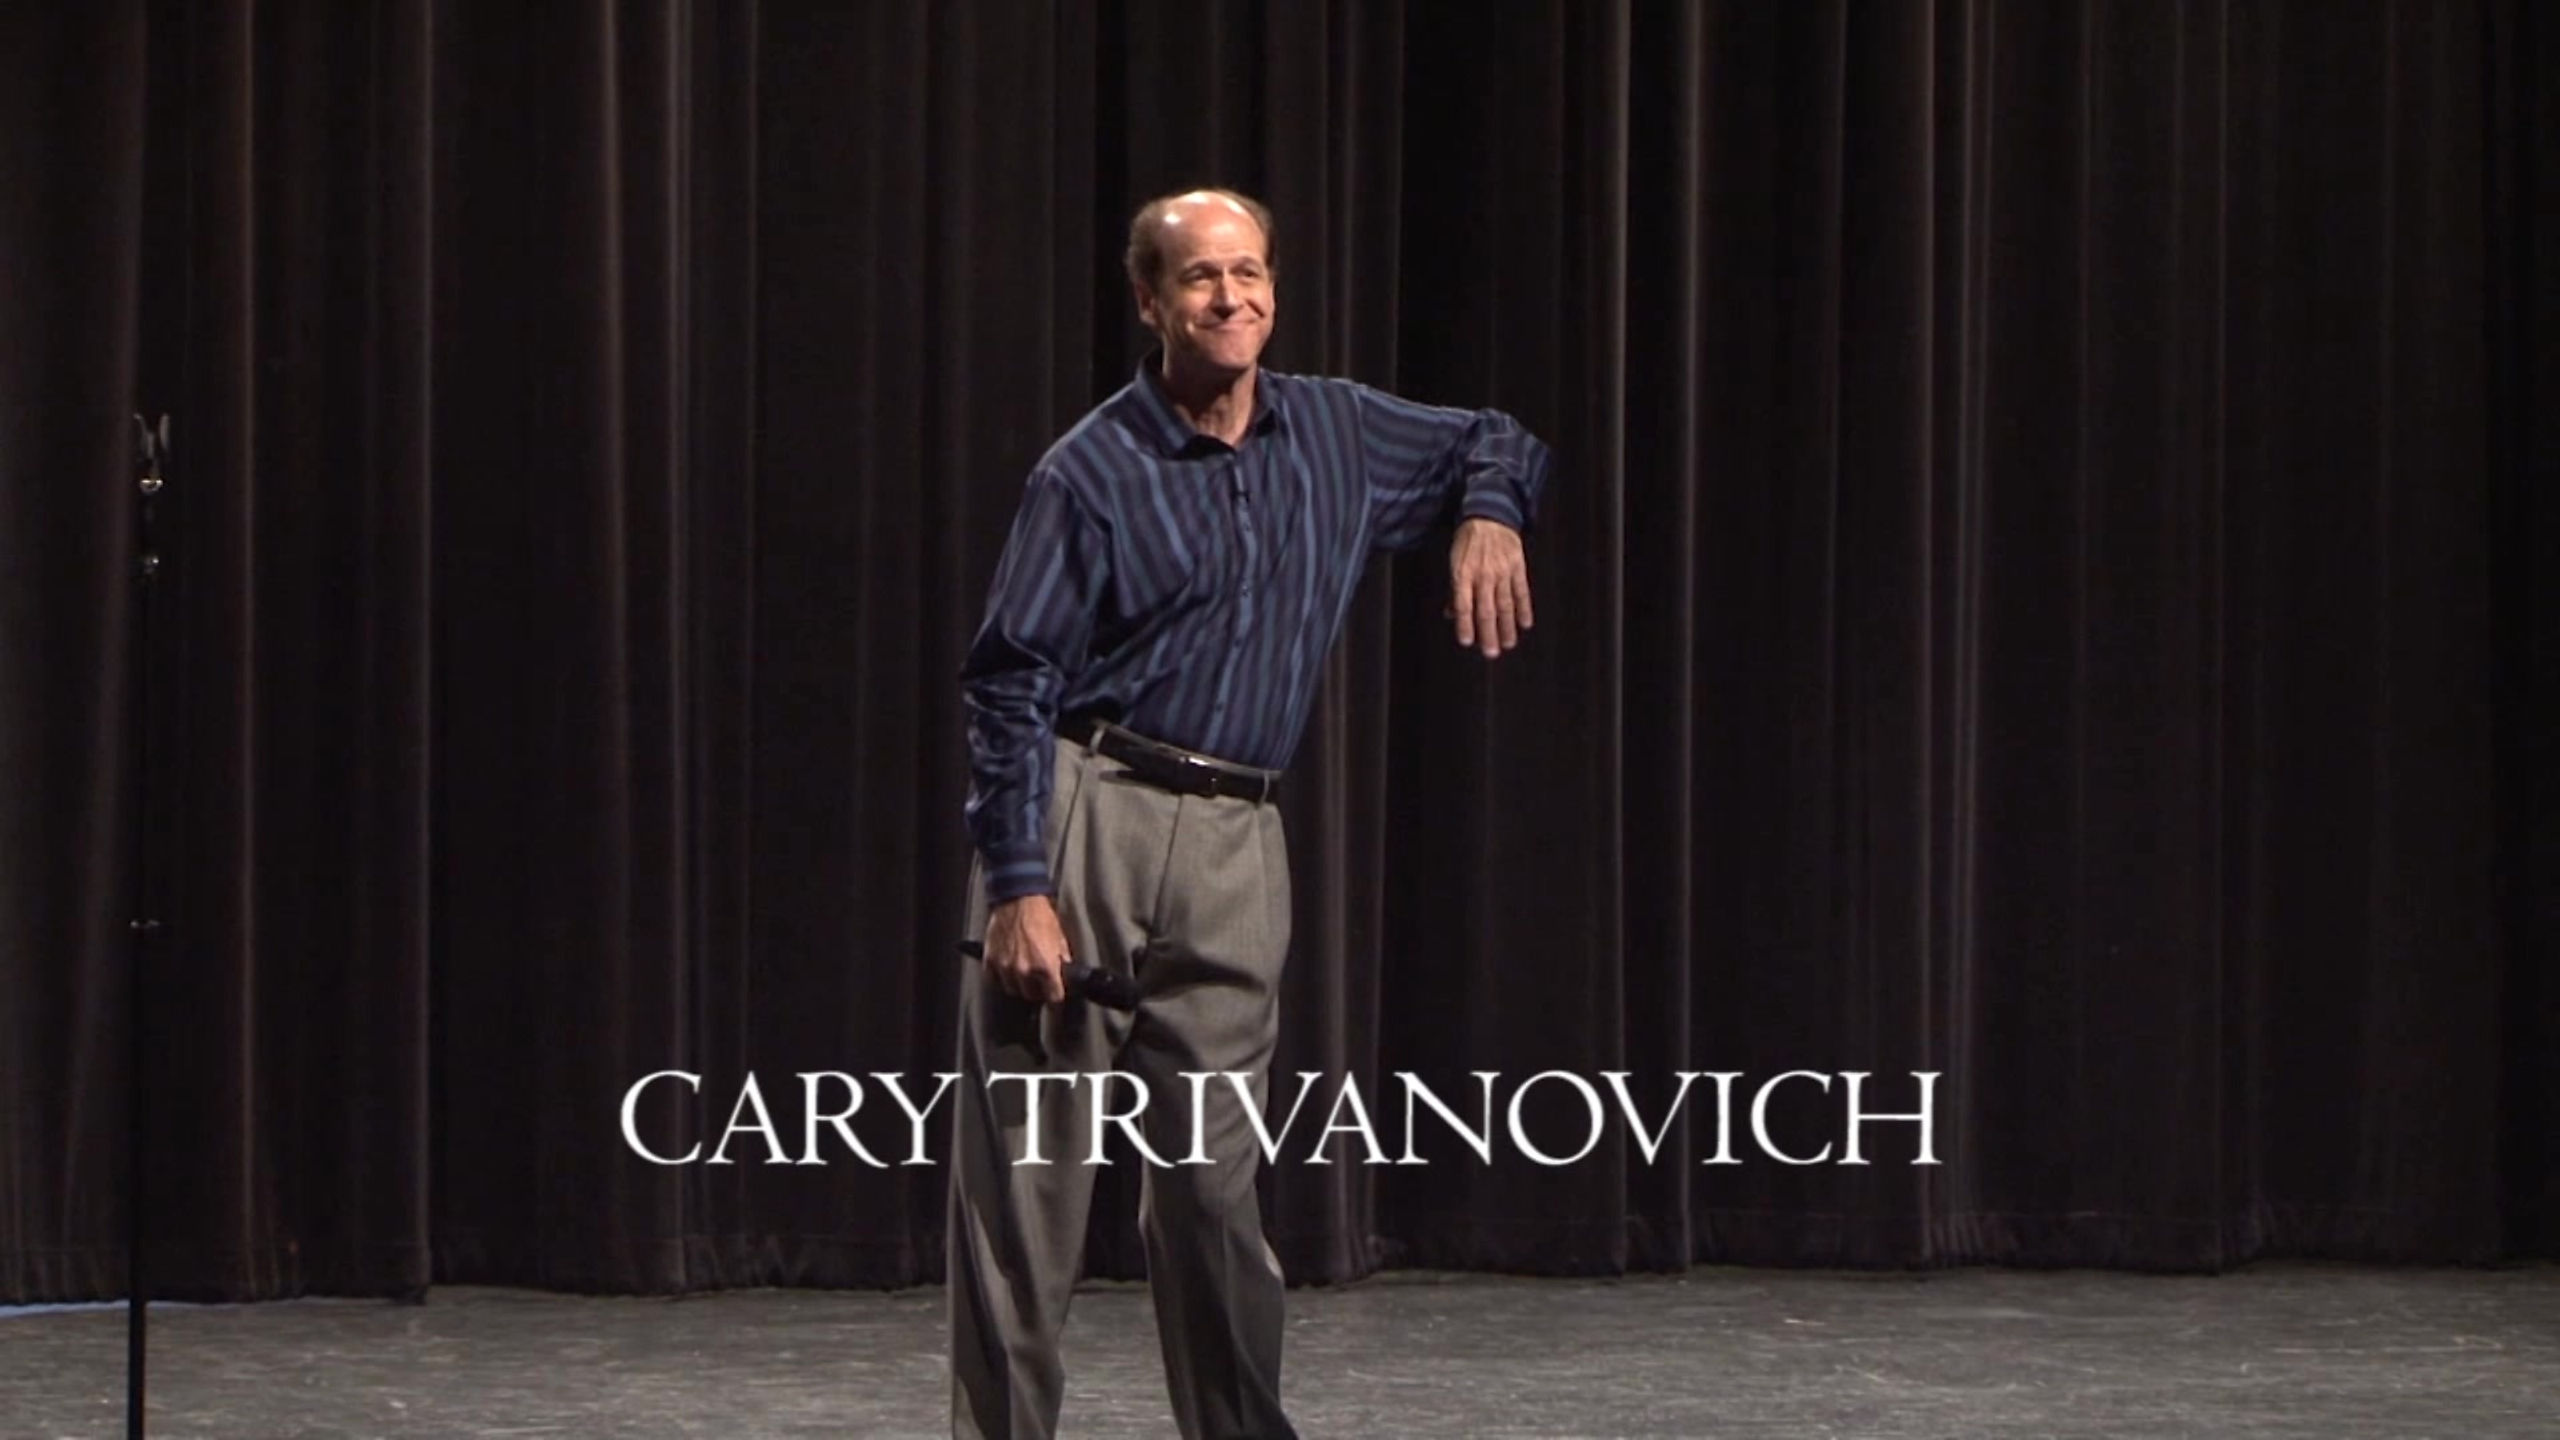 Cary Trivanovich